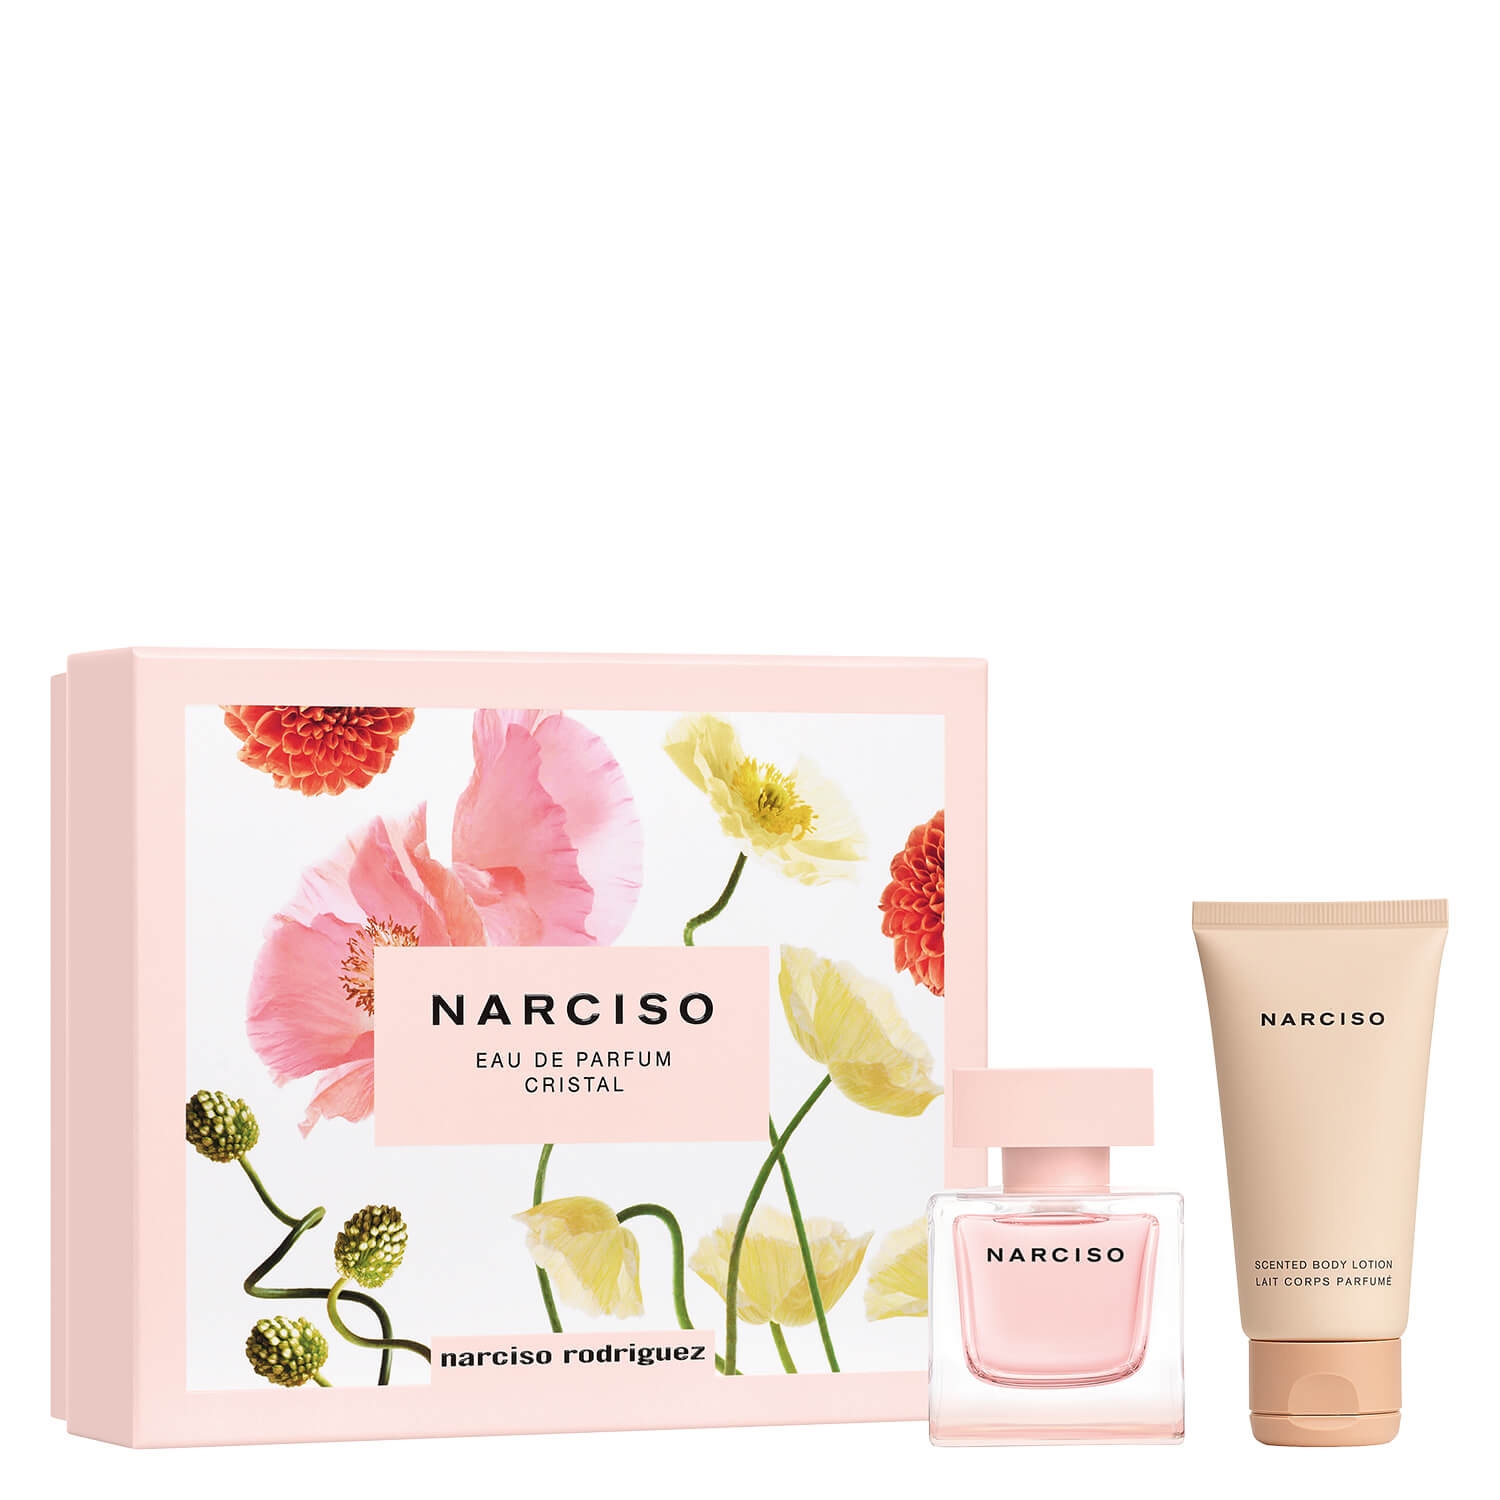 Produktbild von Narciso – Eau de Parfum Cristal Spring Set